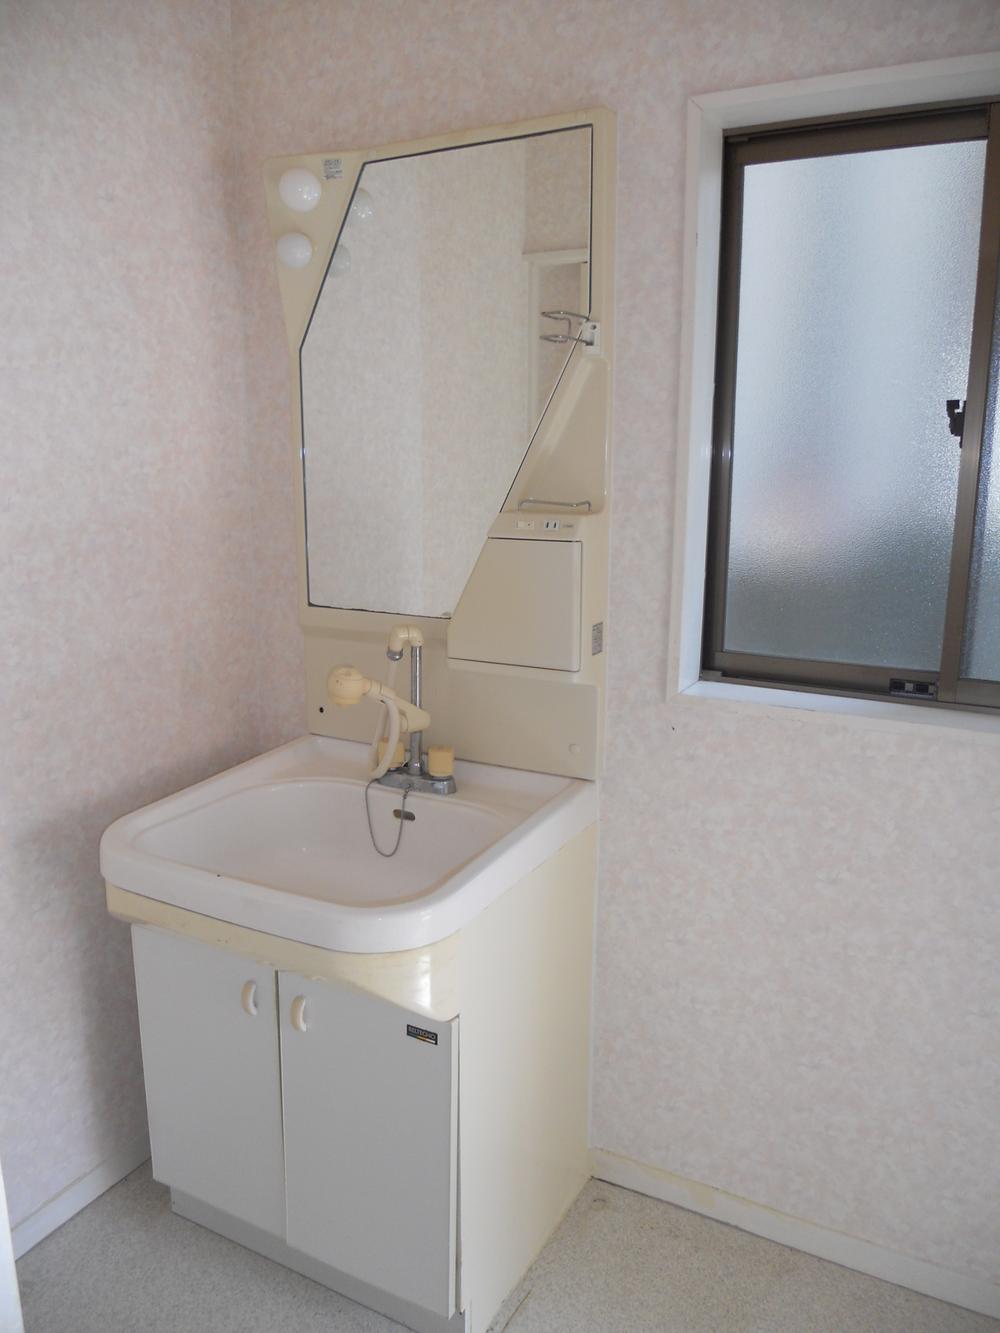 Wash basin, toilet. Indoor (10 May 2012) shooting